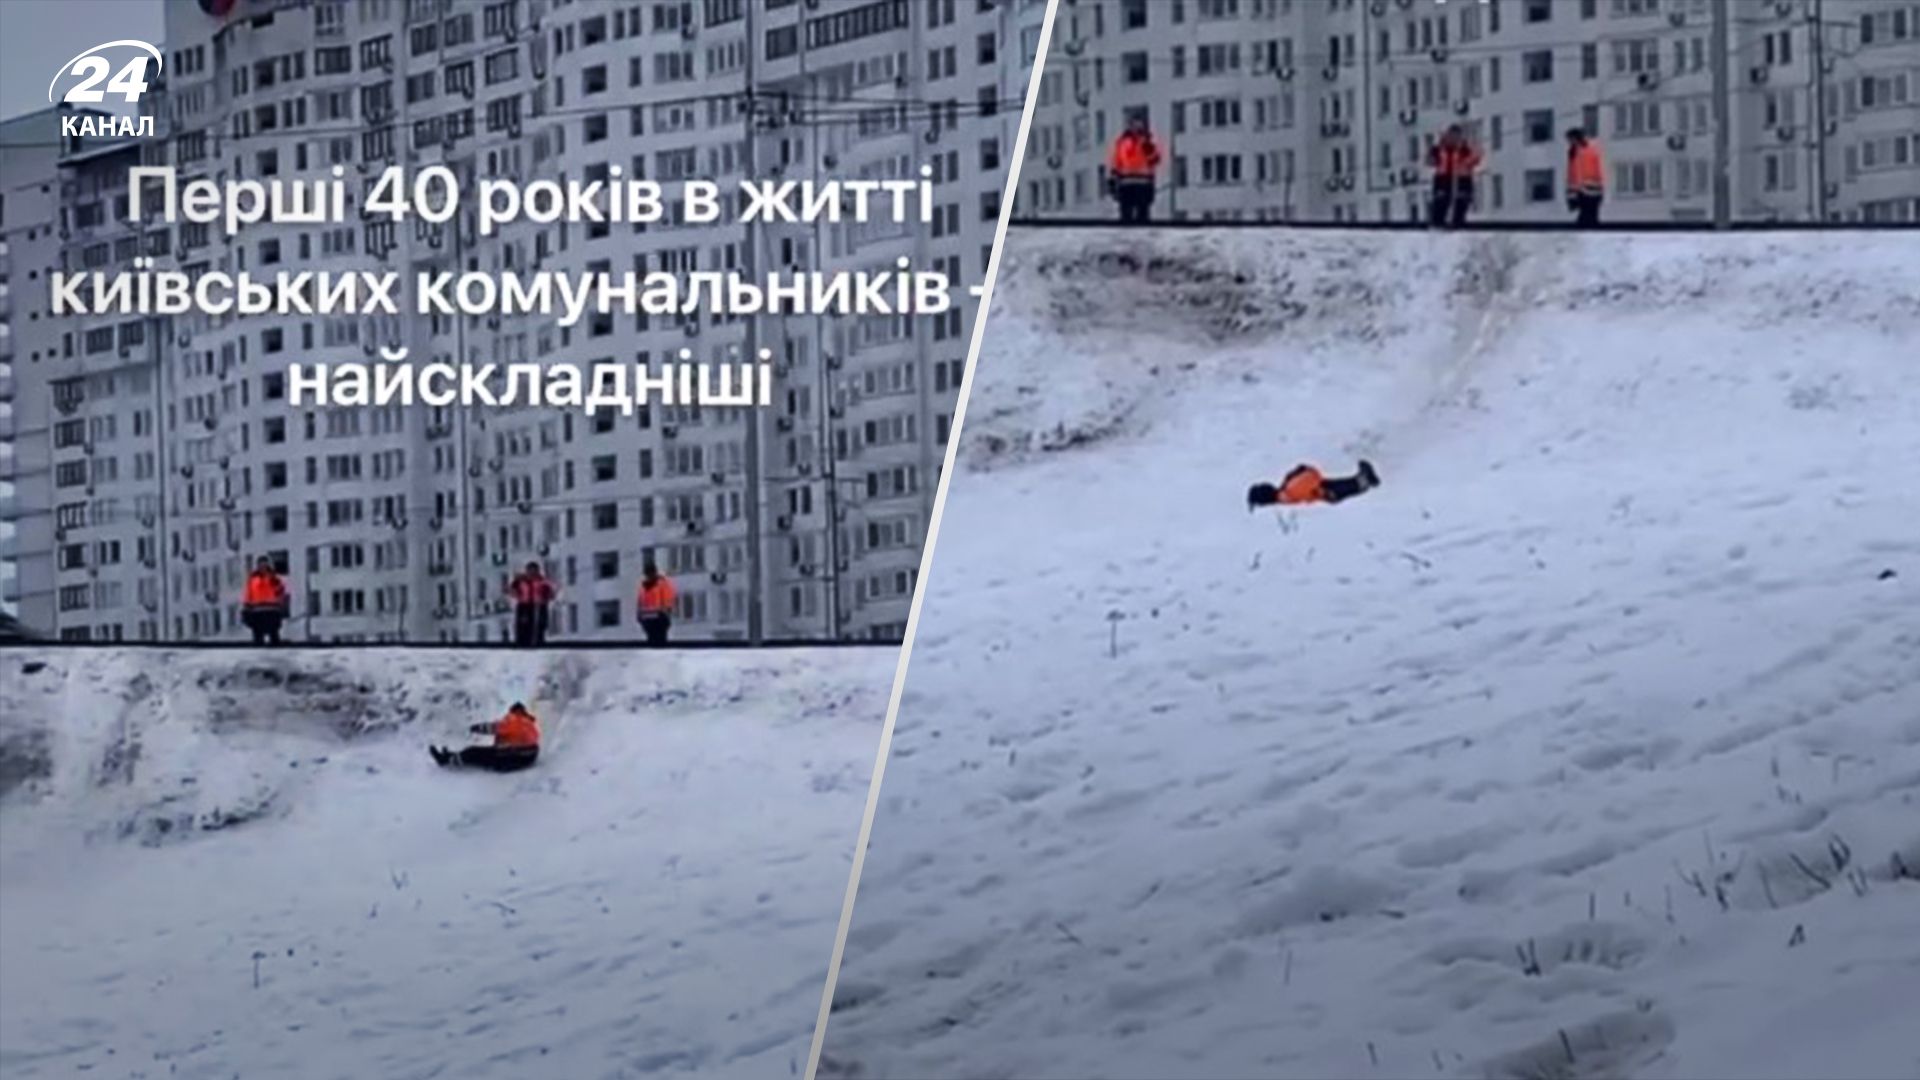 Київські комунальники катаються з гірки - відео